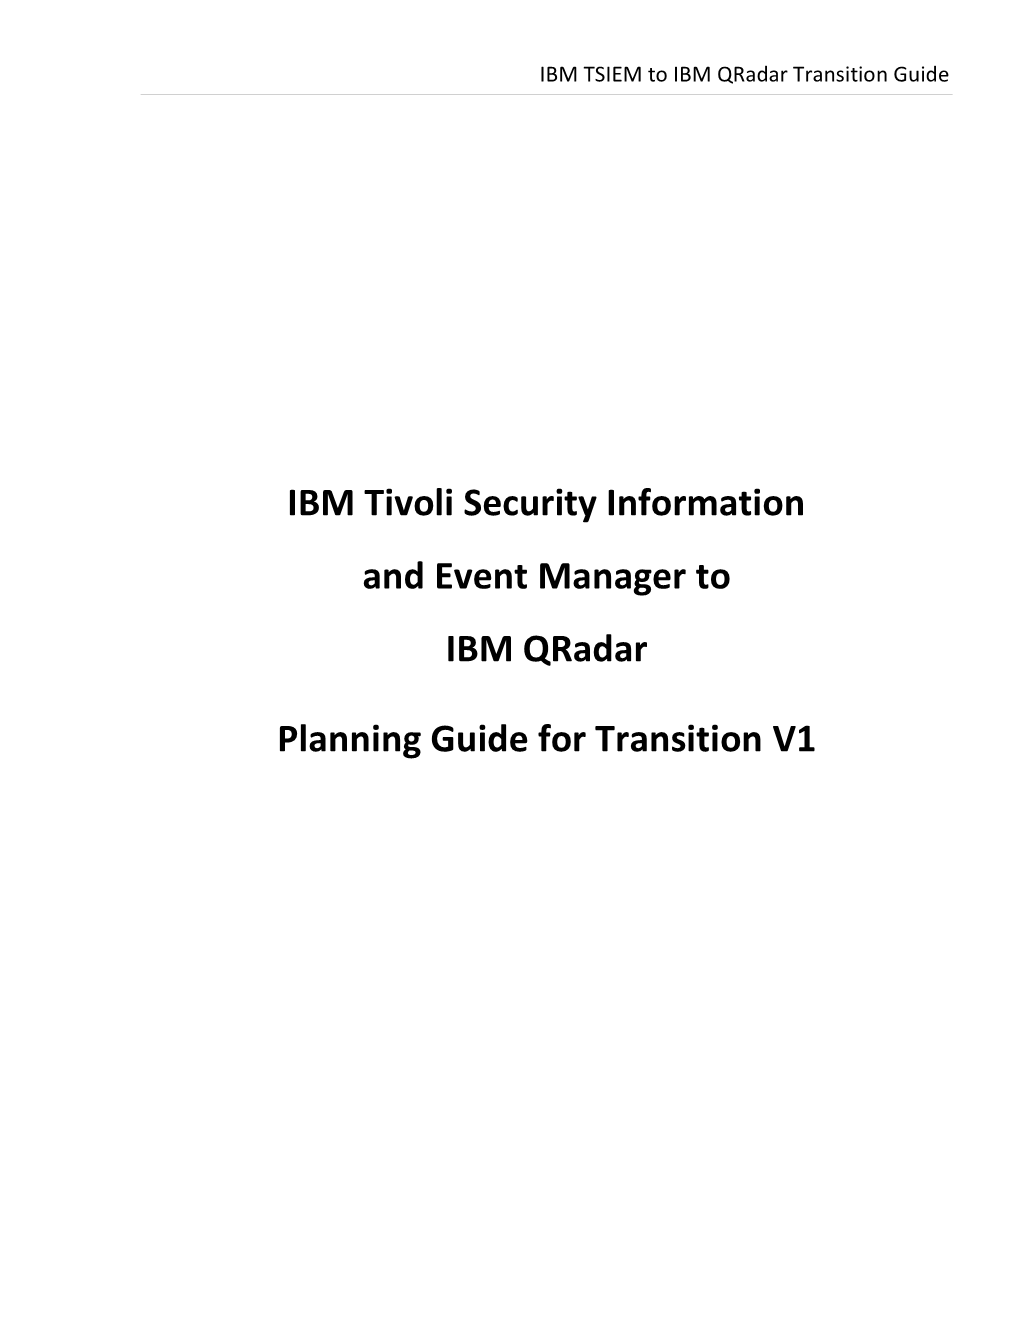 IBM TSIEM to IBM Qradar Transition Guide